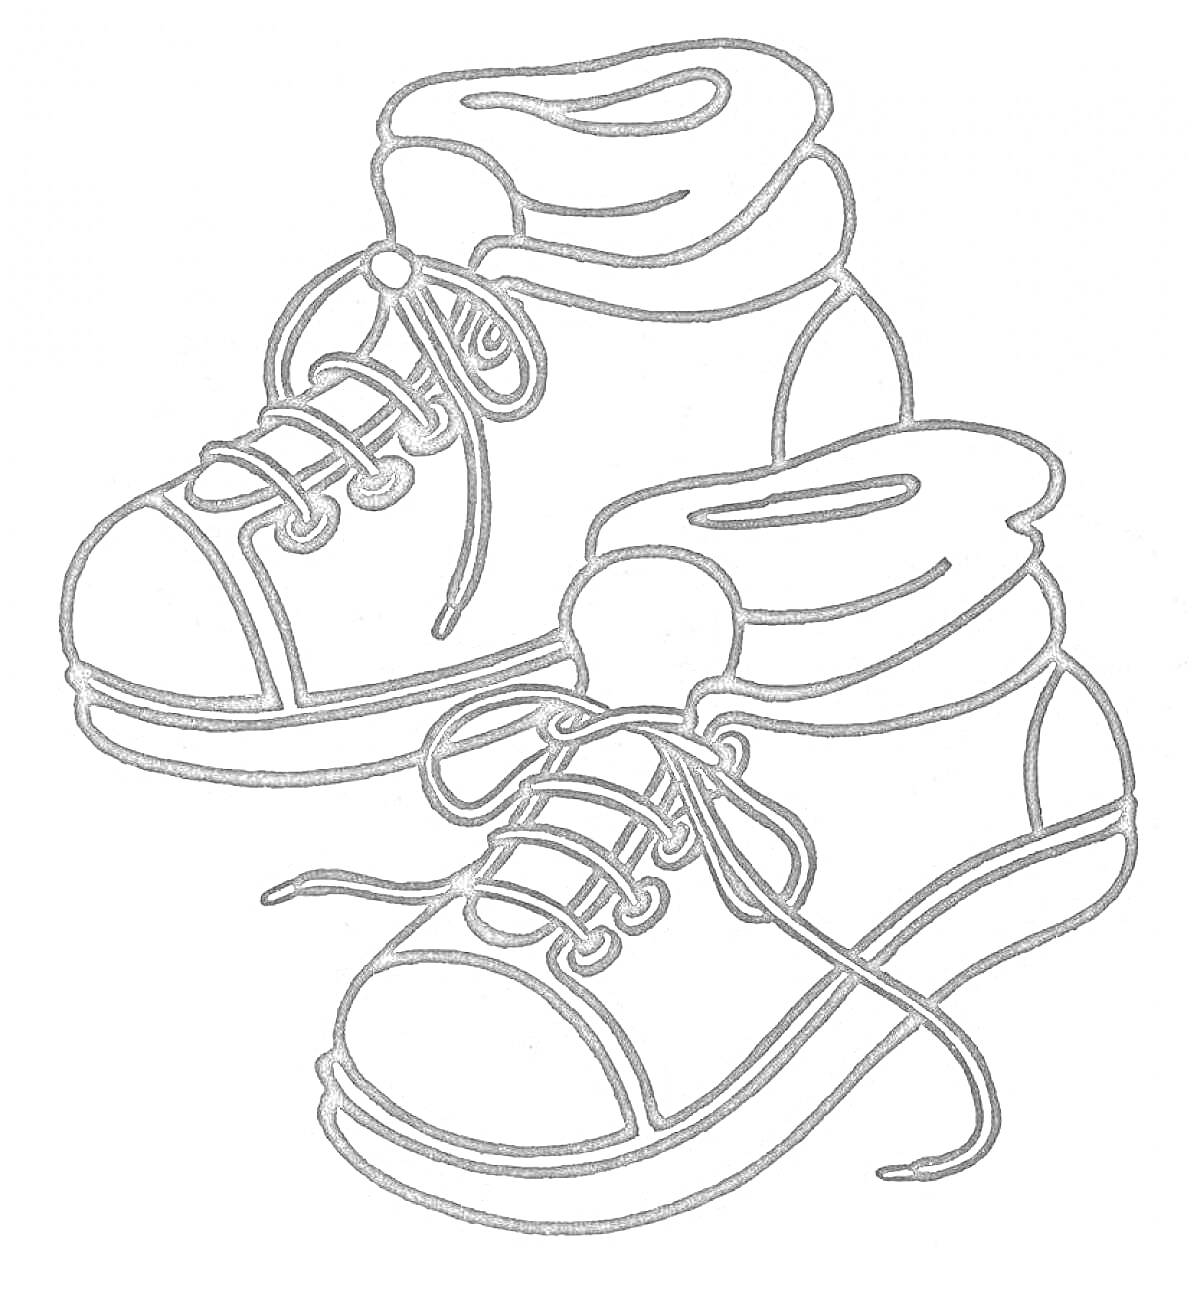 Две ботинки с шнурками и манжетами